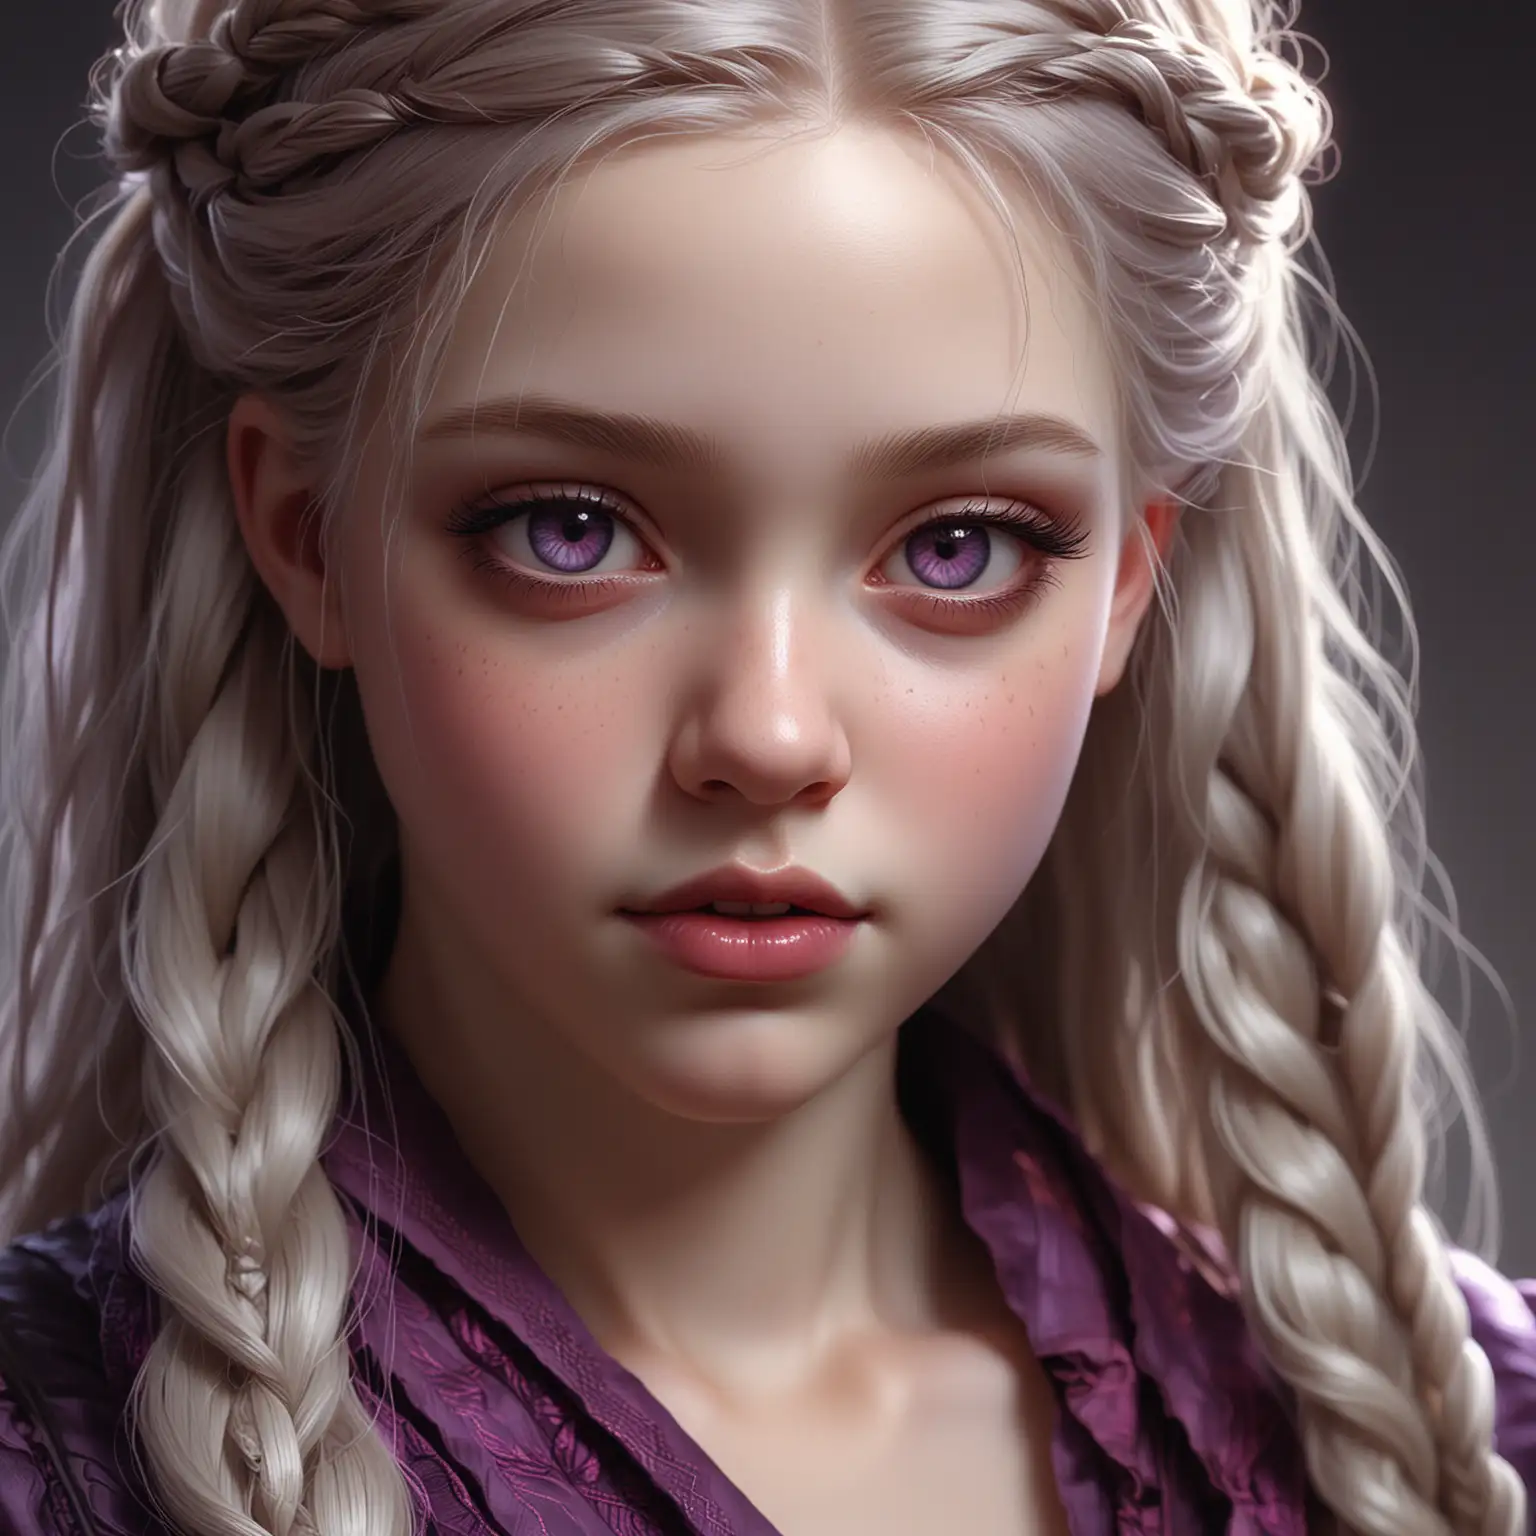 Paleskinned Vampire Girl with Braided Ashen Hair Fantasy Art Character Illustration